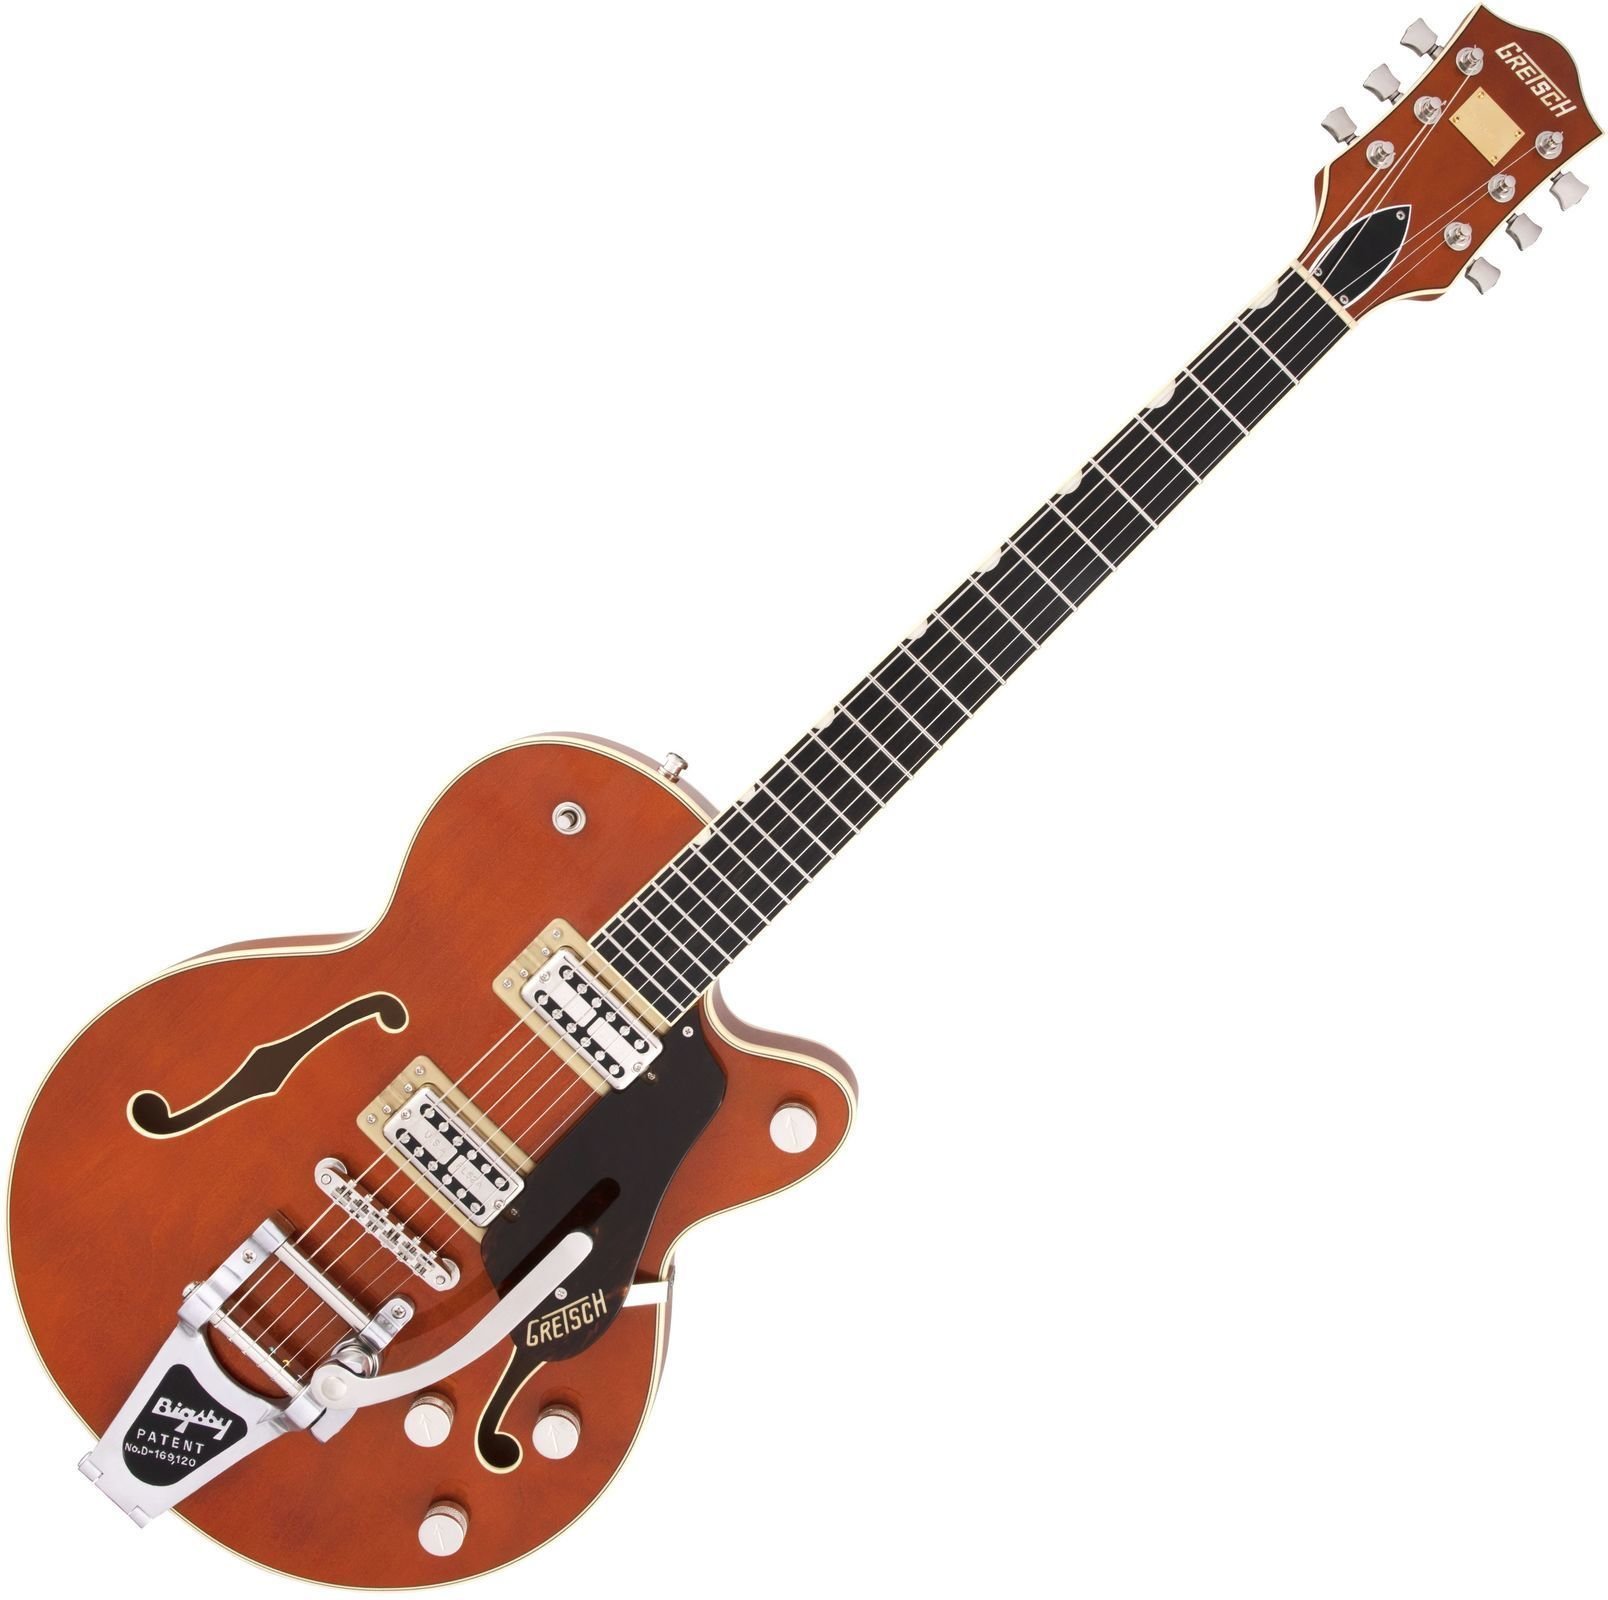 Halbresonanz-Gitarre Gretsch G6659T Players Edition Broadkaster JR Round-up Orange